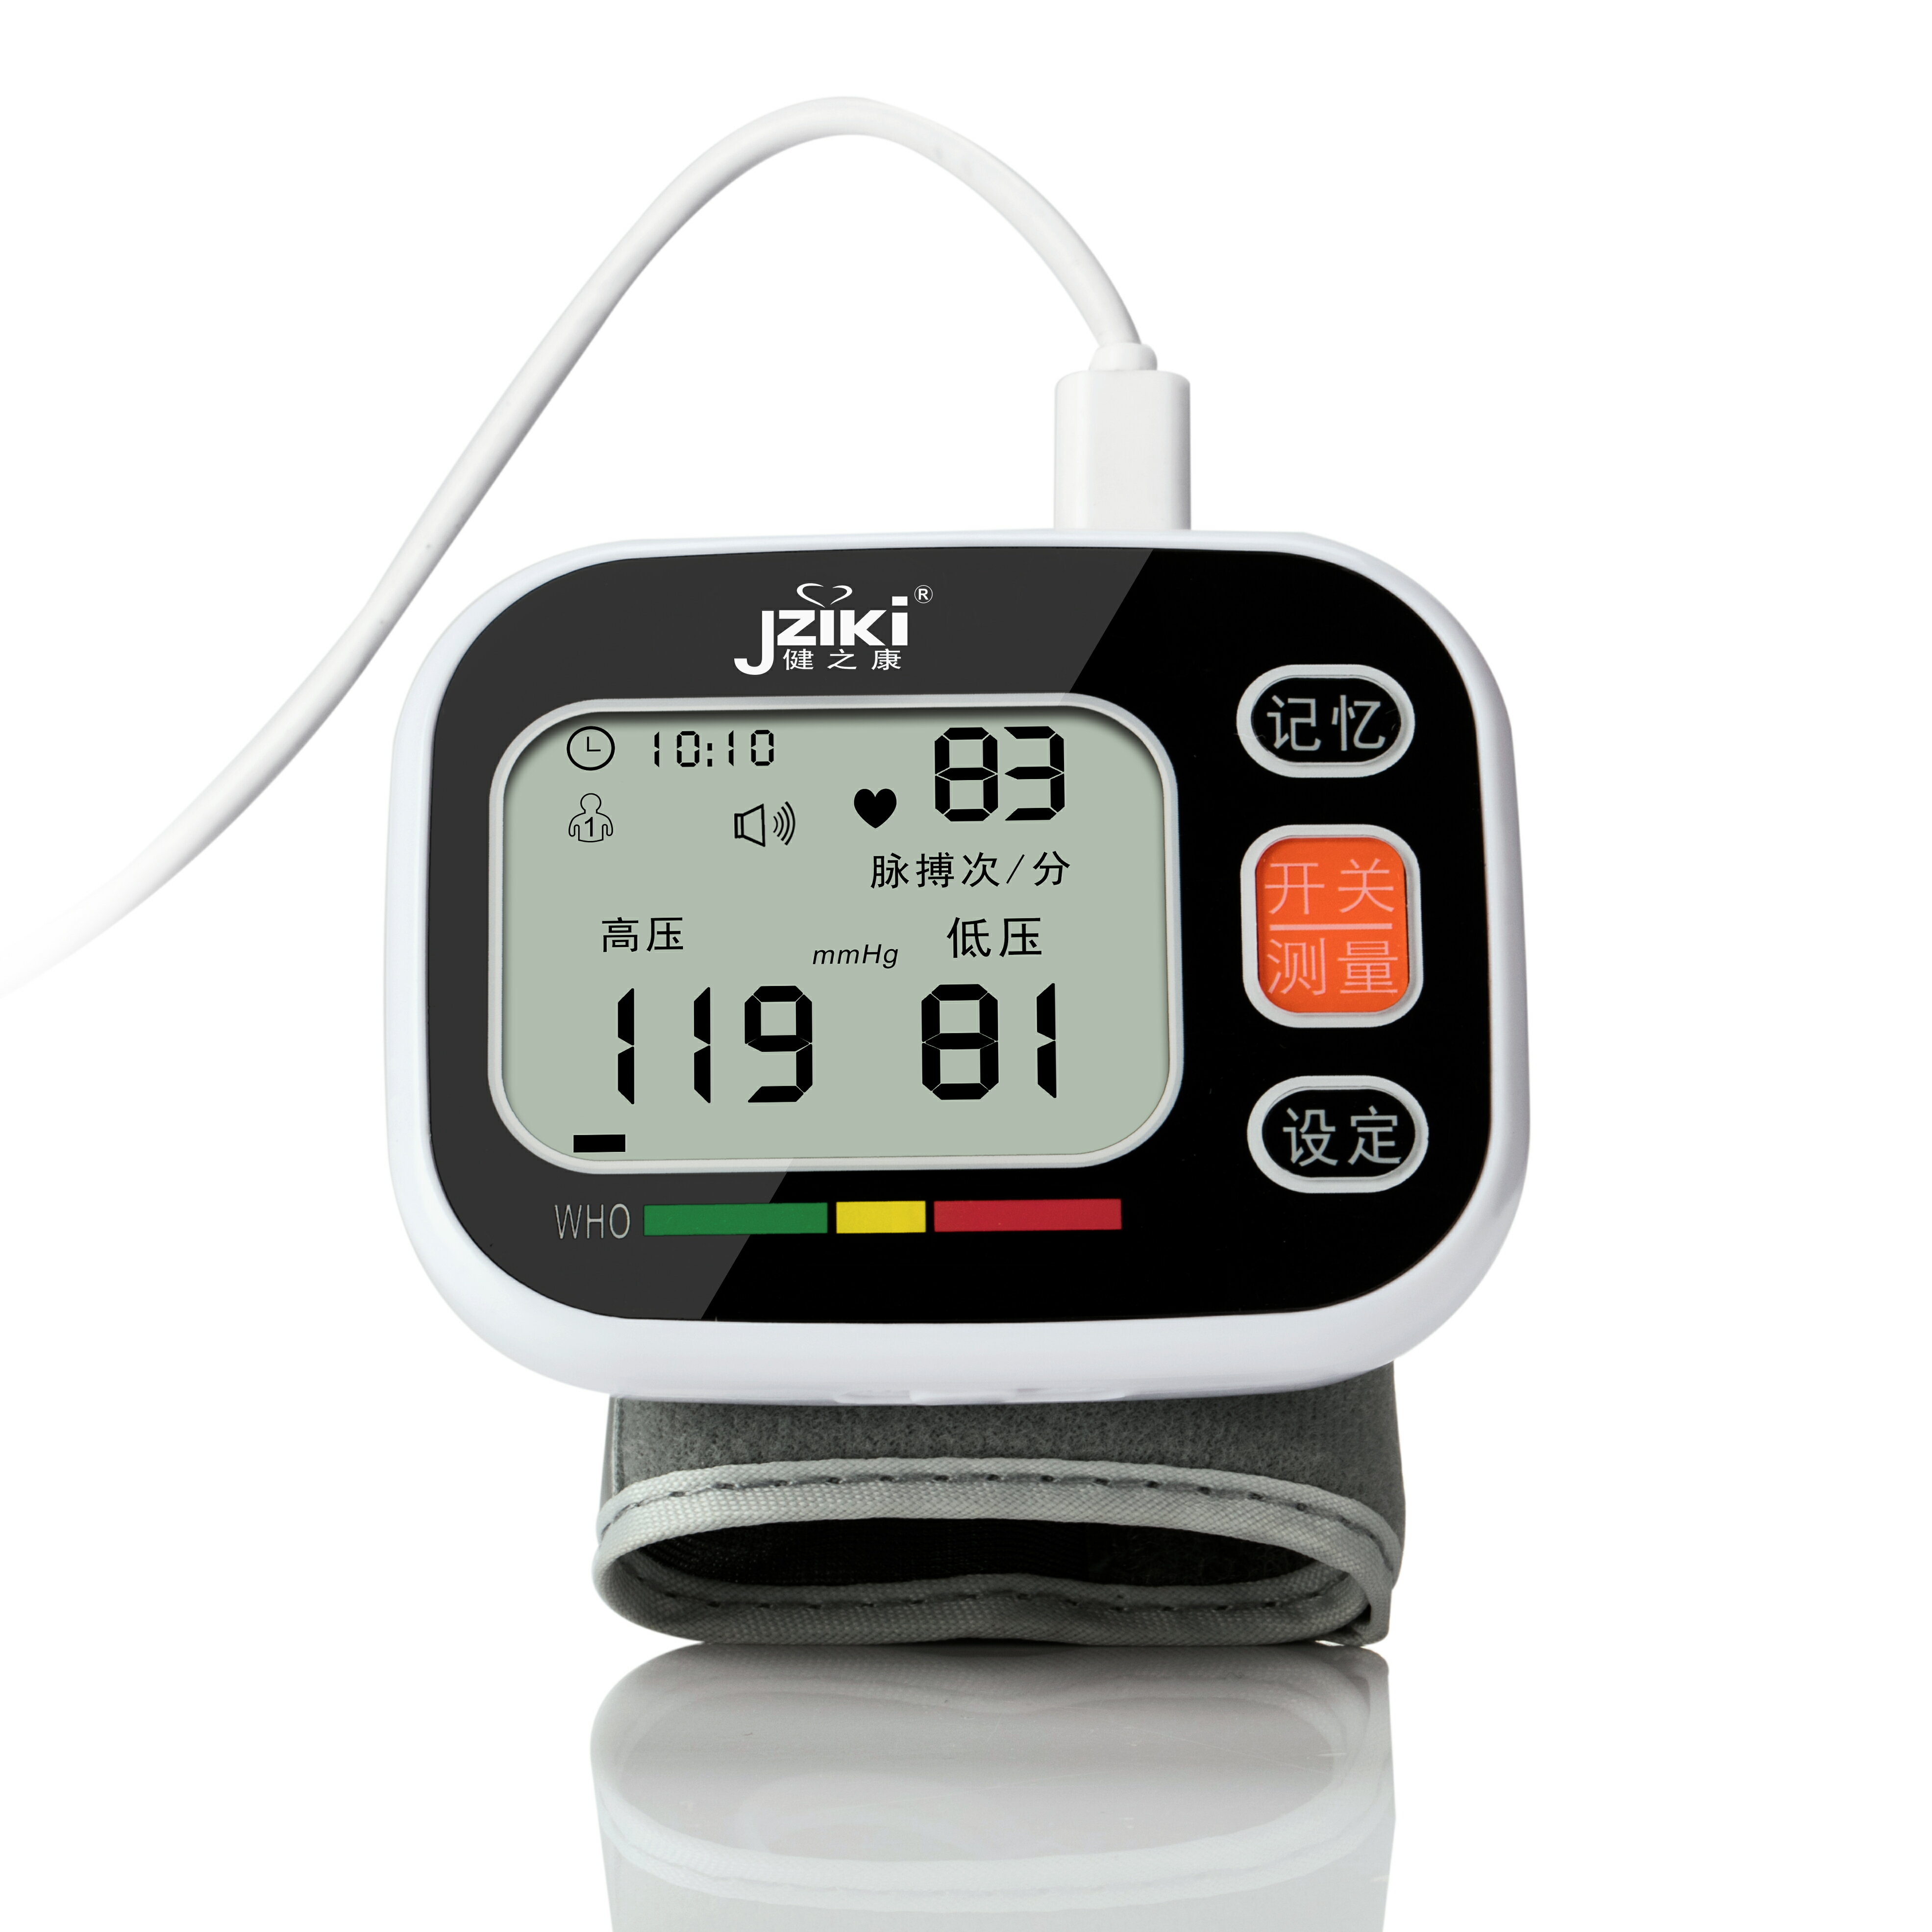 電子測家用壓全自動高精準手腕式量血壓計測量表儀器腕式老人醫用